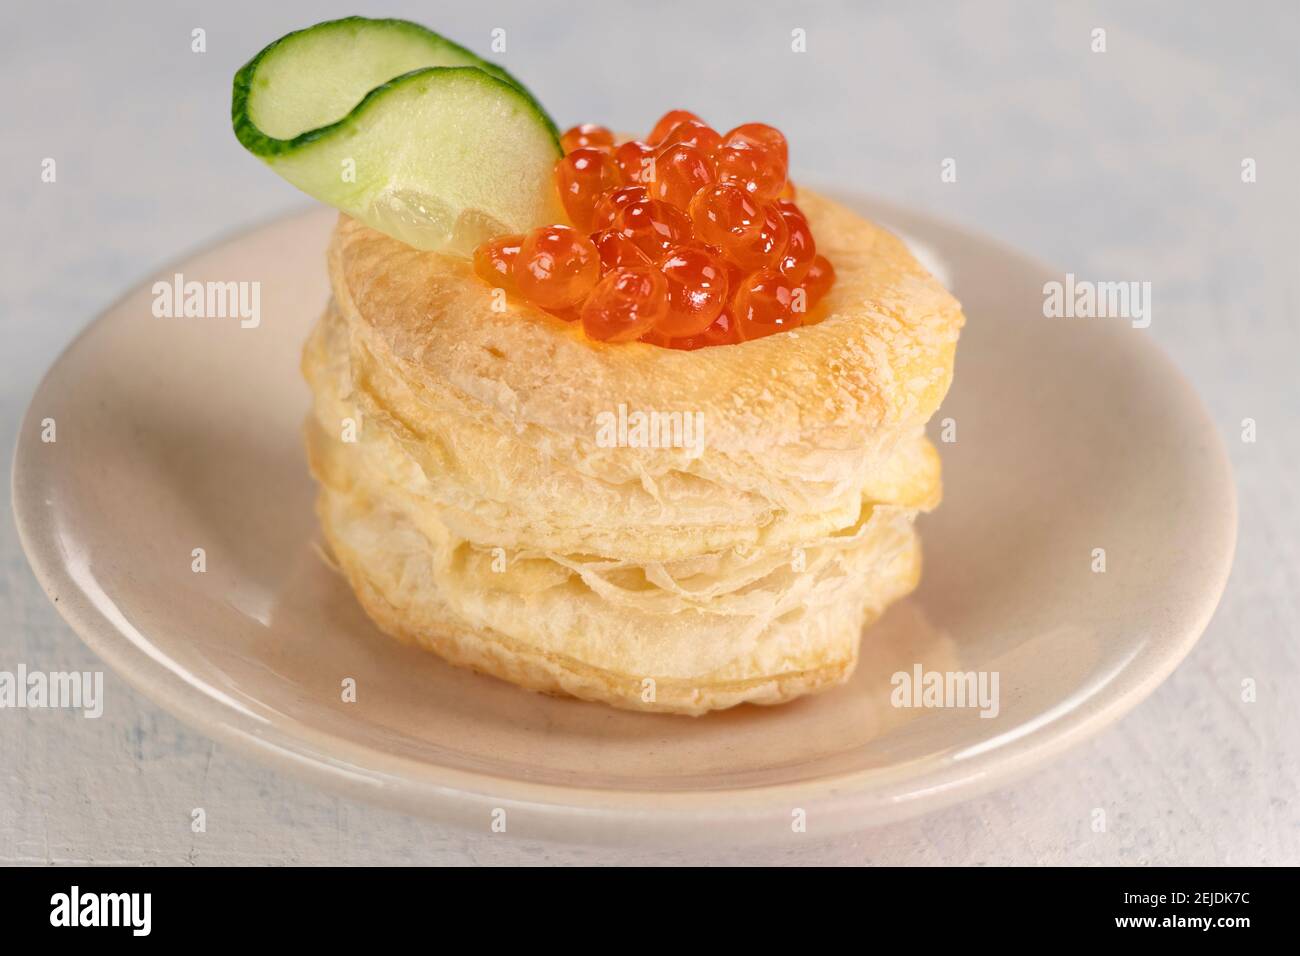 Vorspeise mit rotem Kaviar. Tartlets, roter Kaviar, Gurke auf weißem Hintergrund. Köstliche und gesunde Snack. Draufsicht Stockfoto